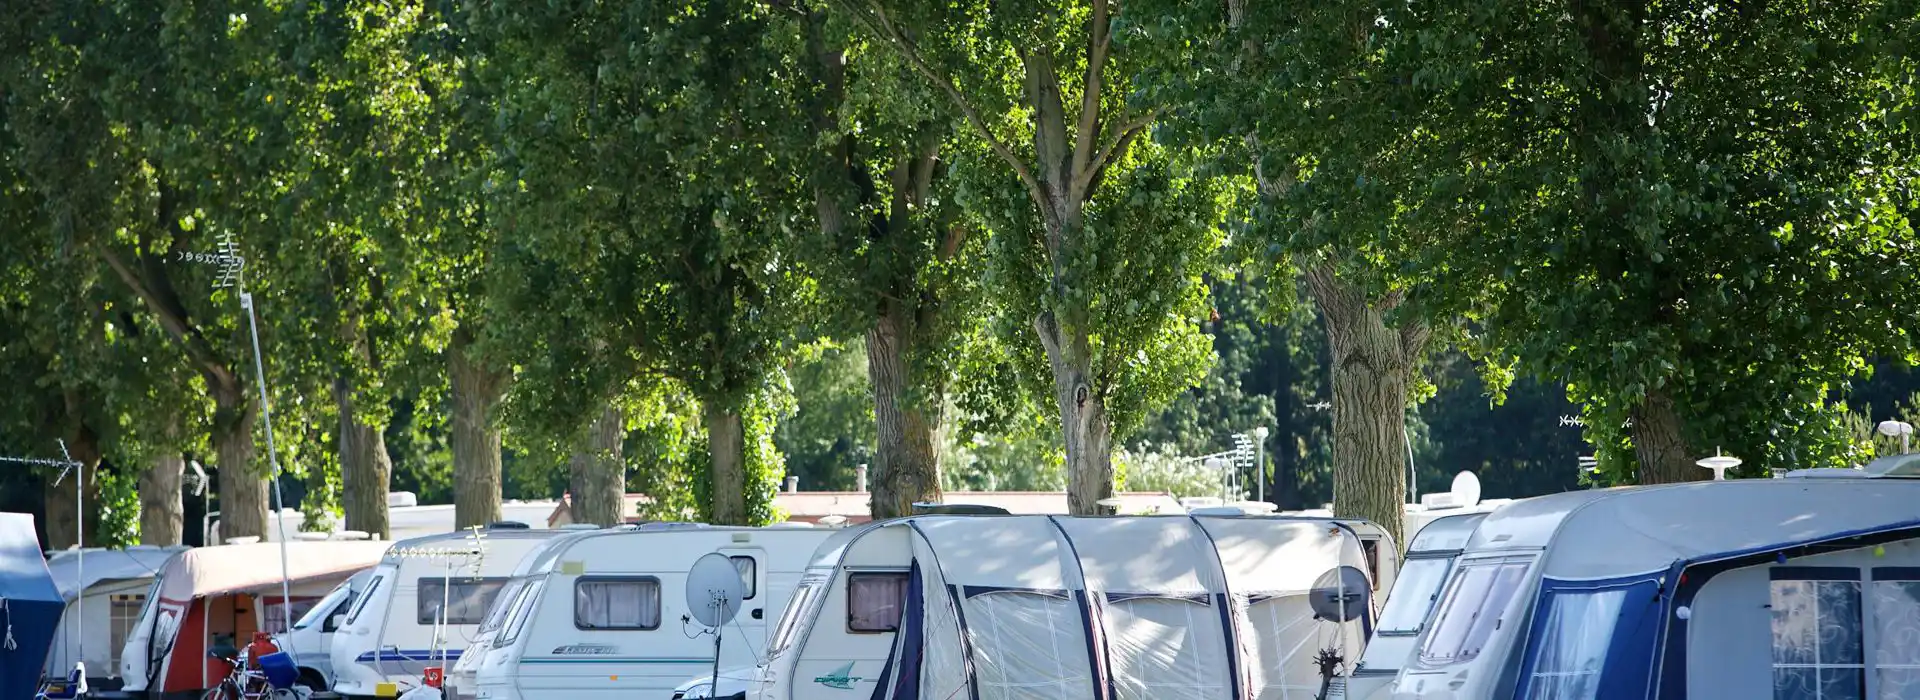 Northamptonshire caravan parks